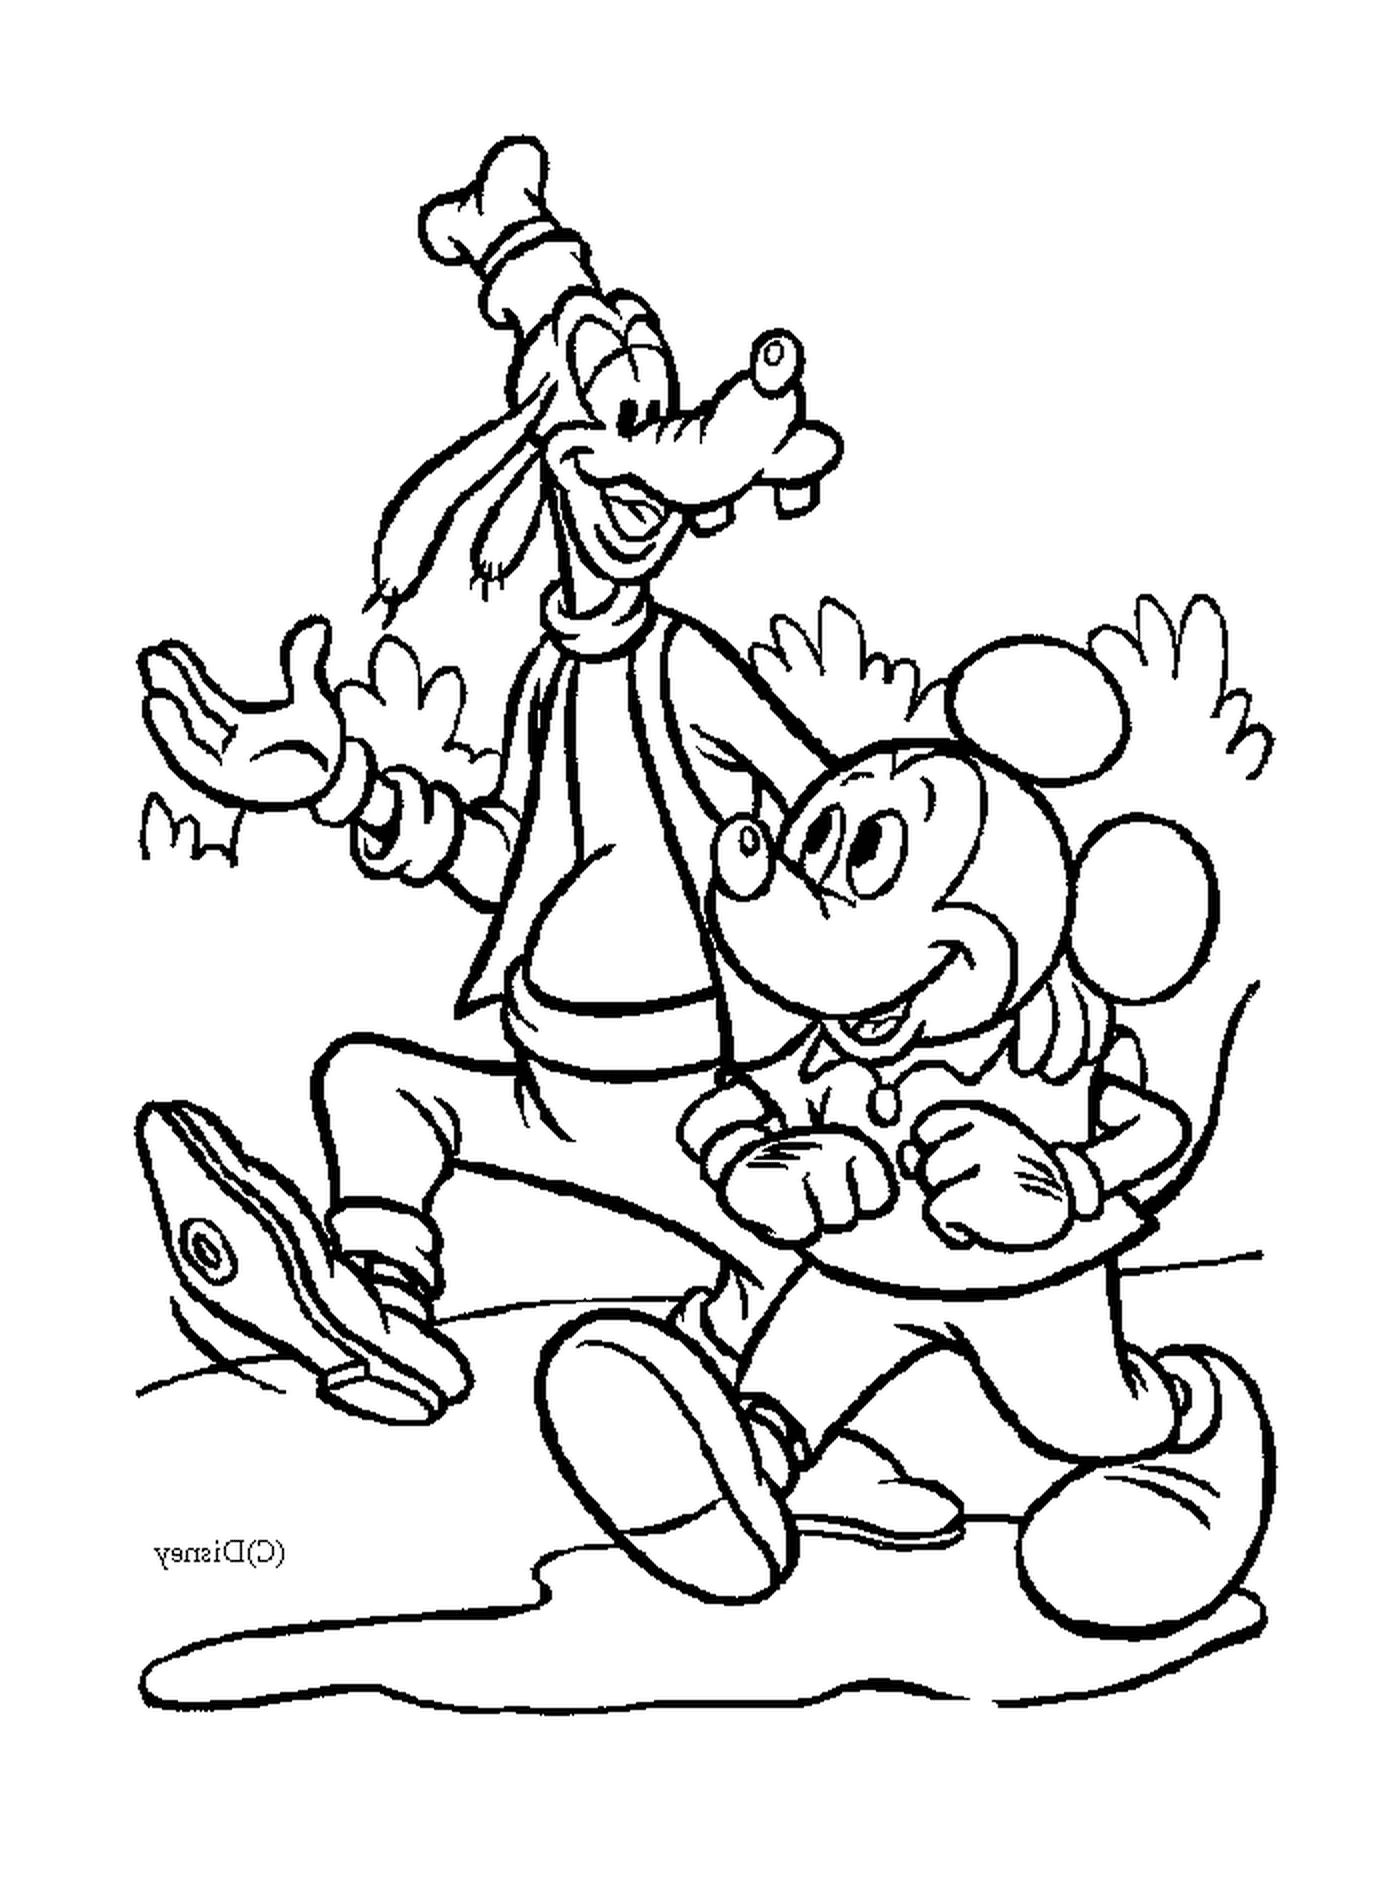  Mickey y su amigo Dingo caminan: Mickey y Dingo 